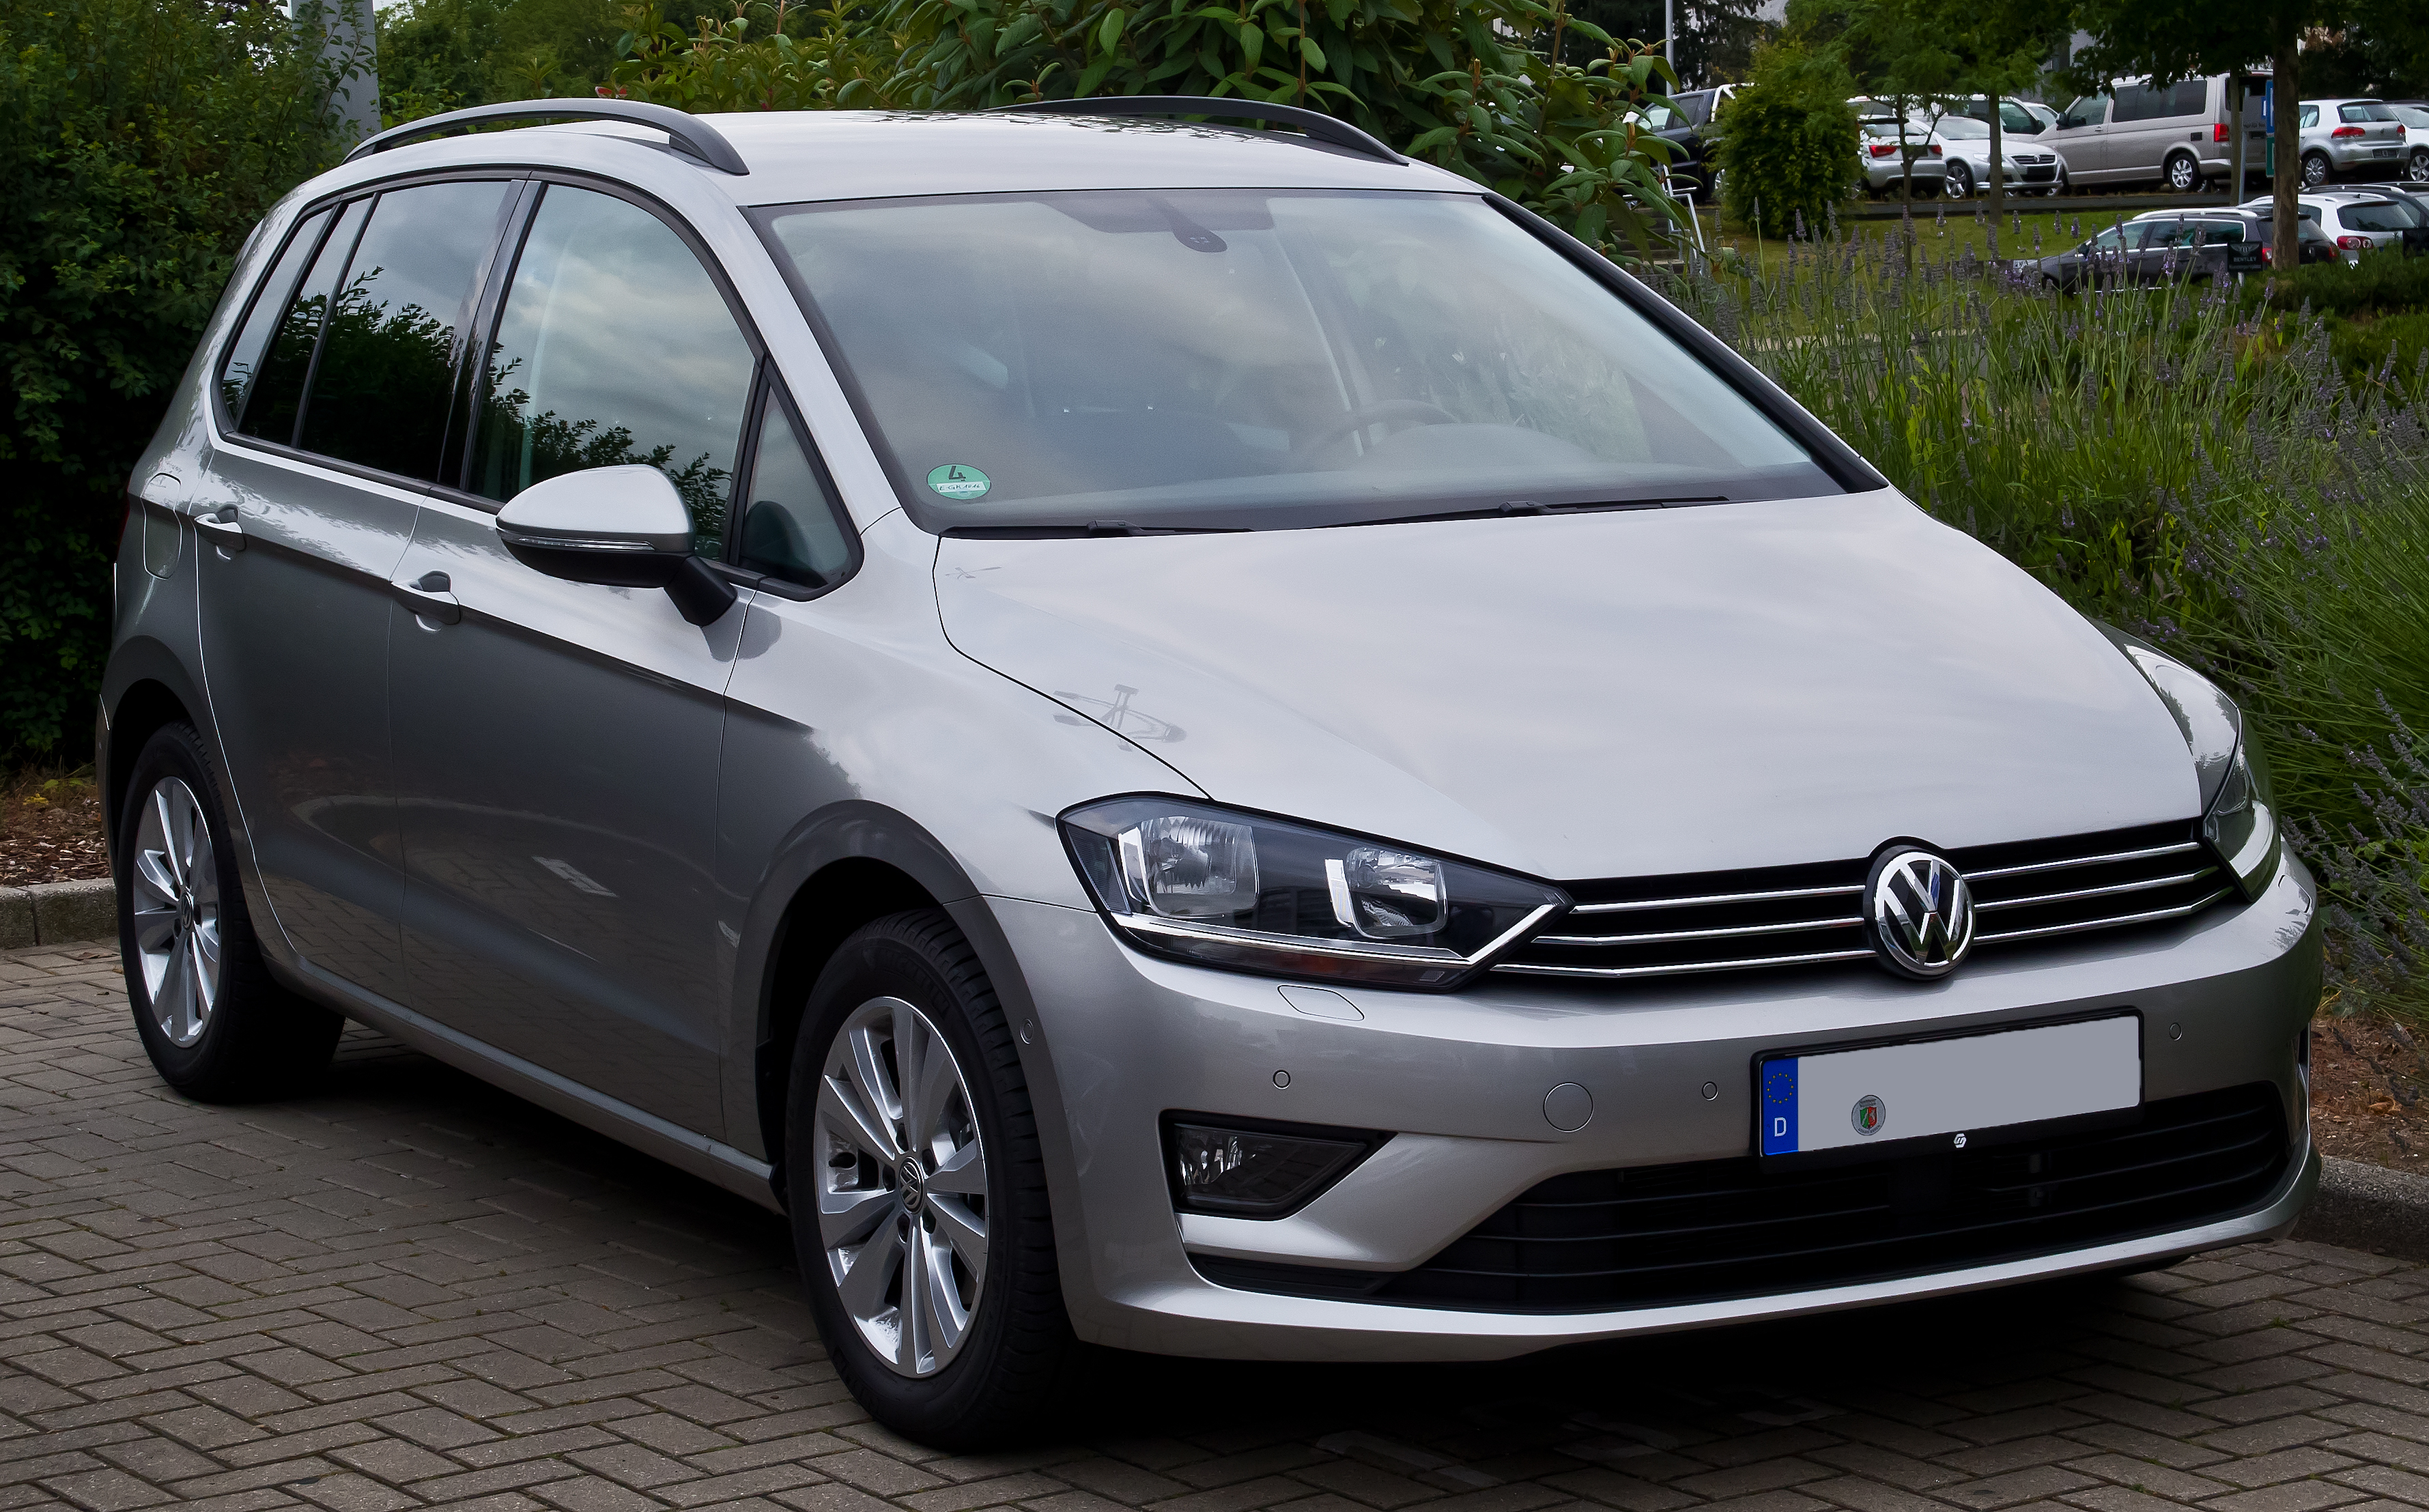 Volkswagen Golf Sportsvan accessories model